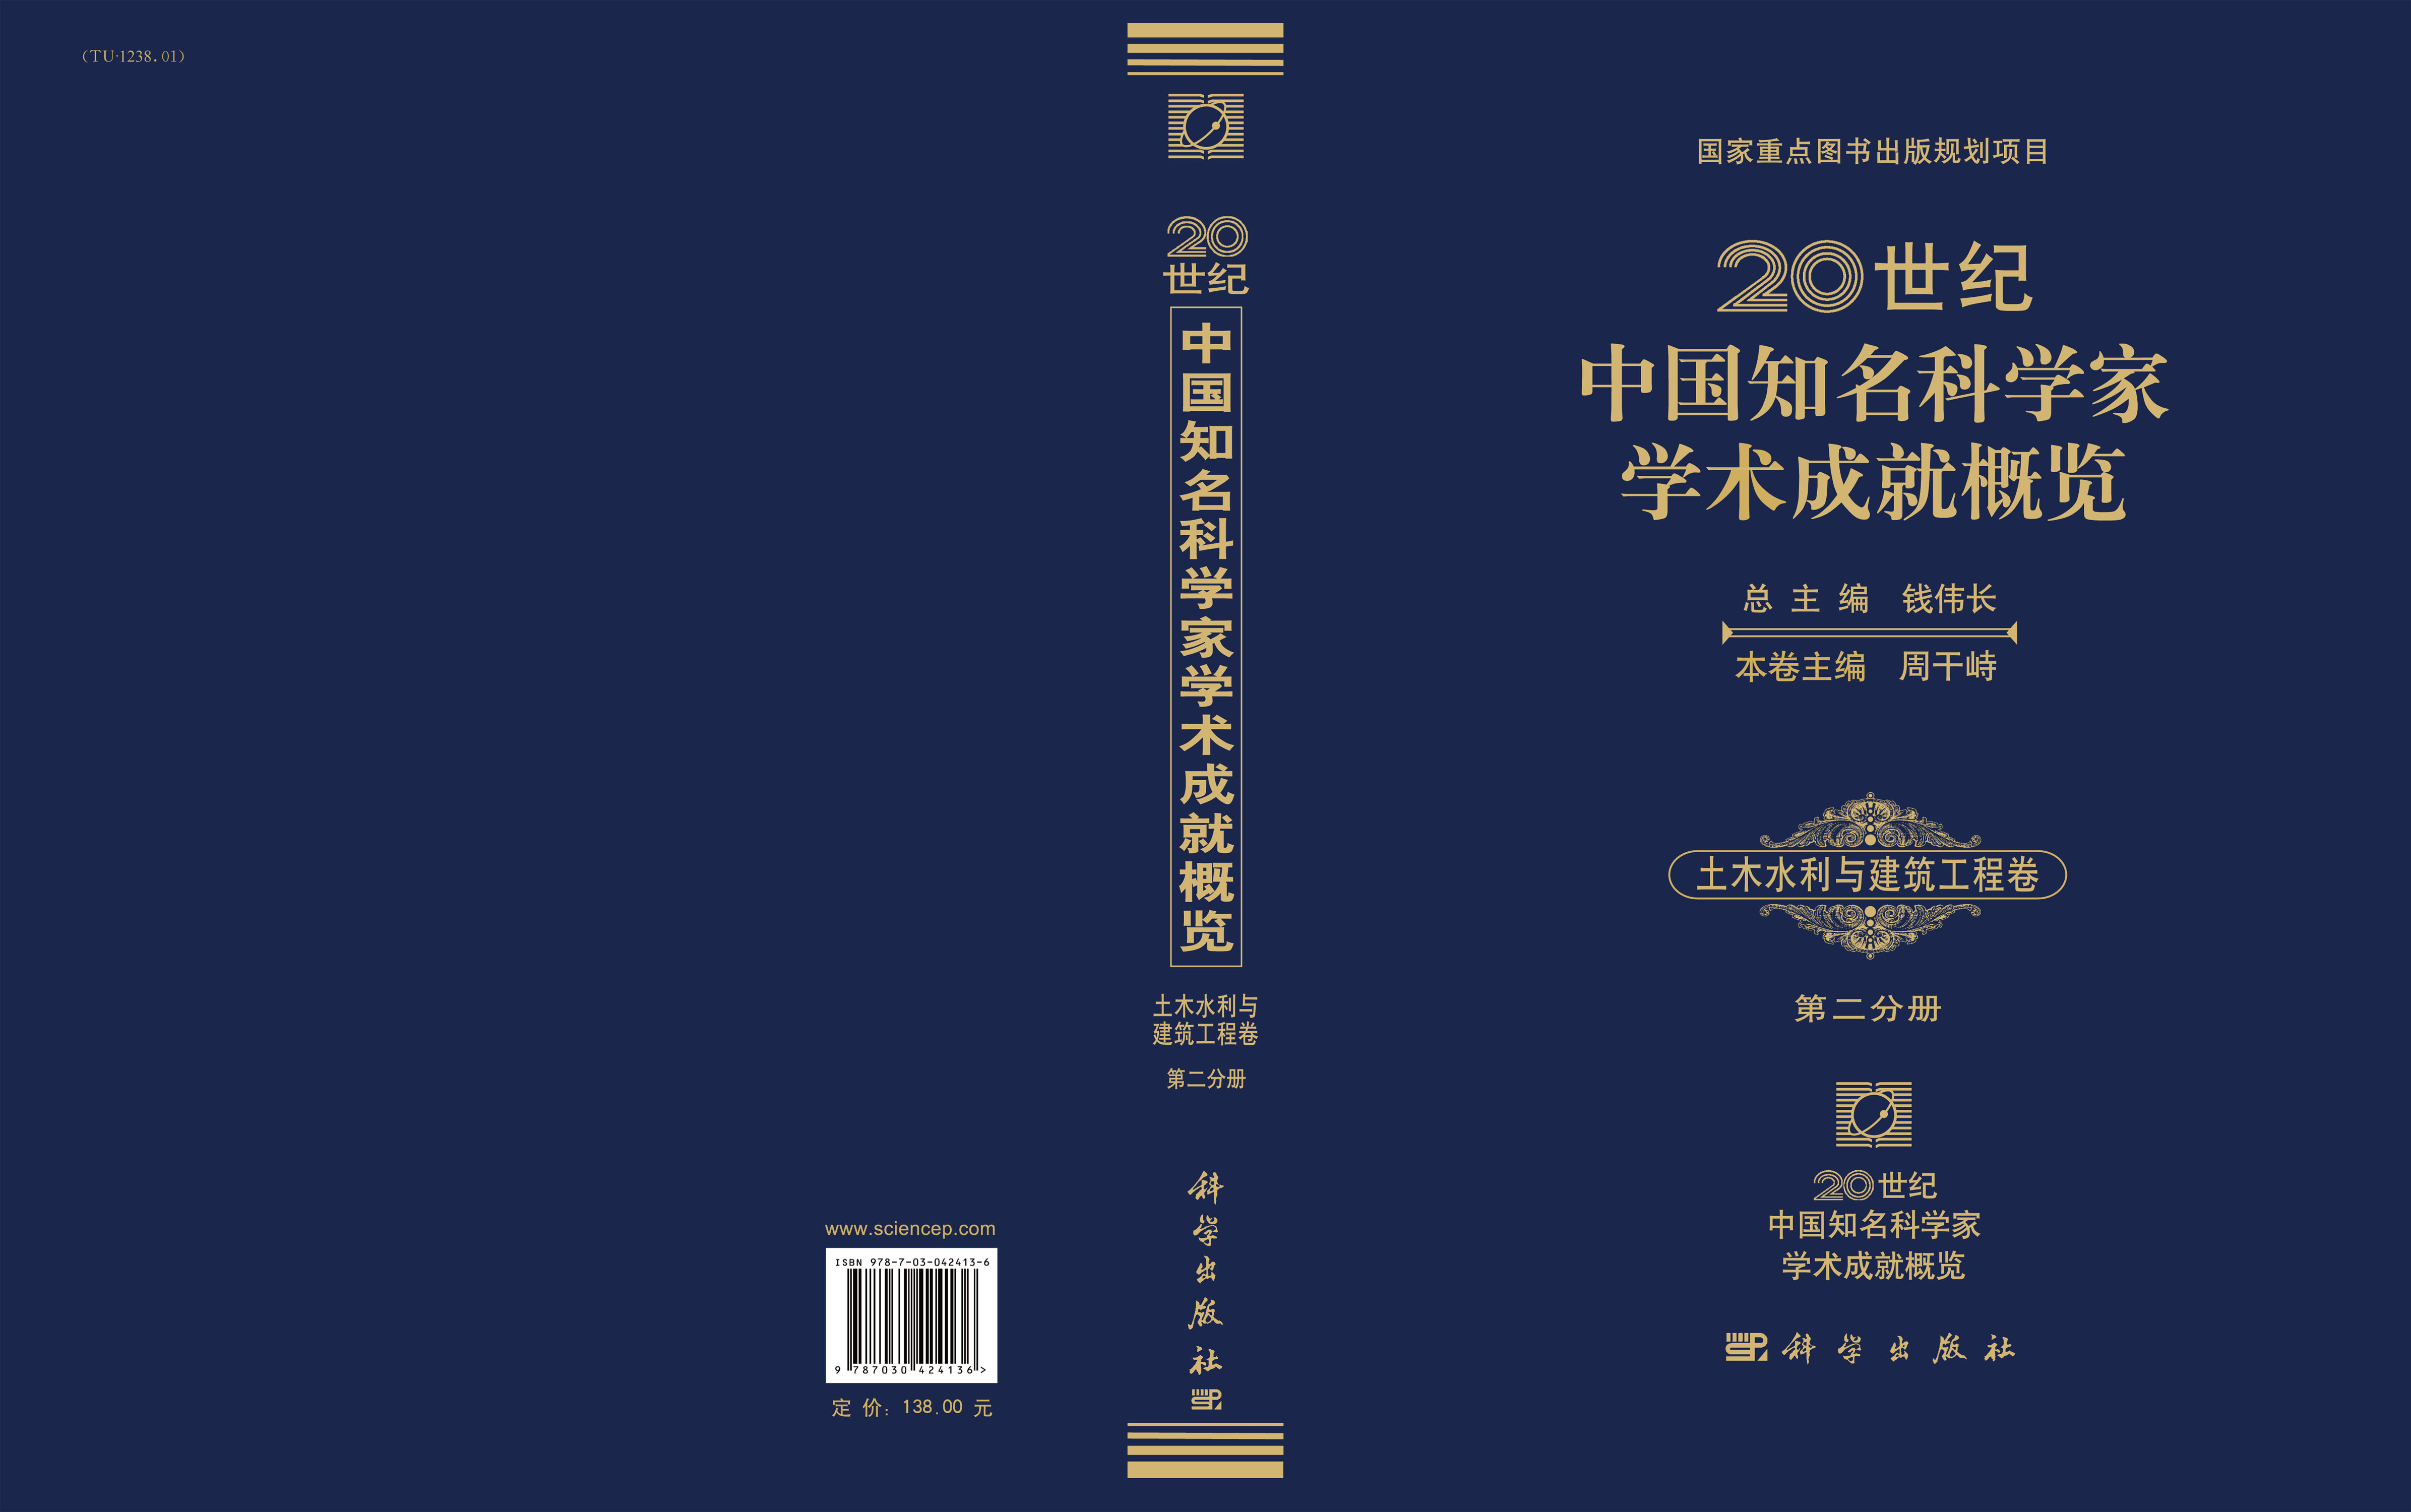 20世纪中国知名科学家学术成就概览・土木水利与建筑工程卷・第二分册